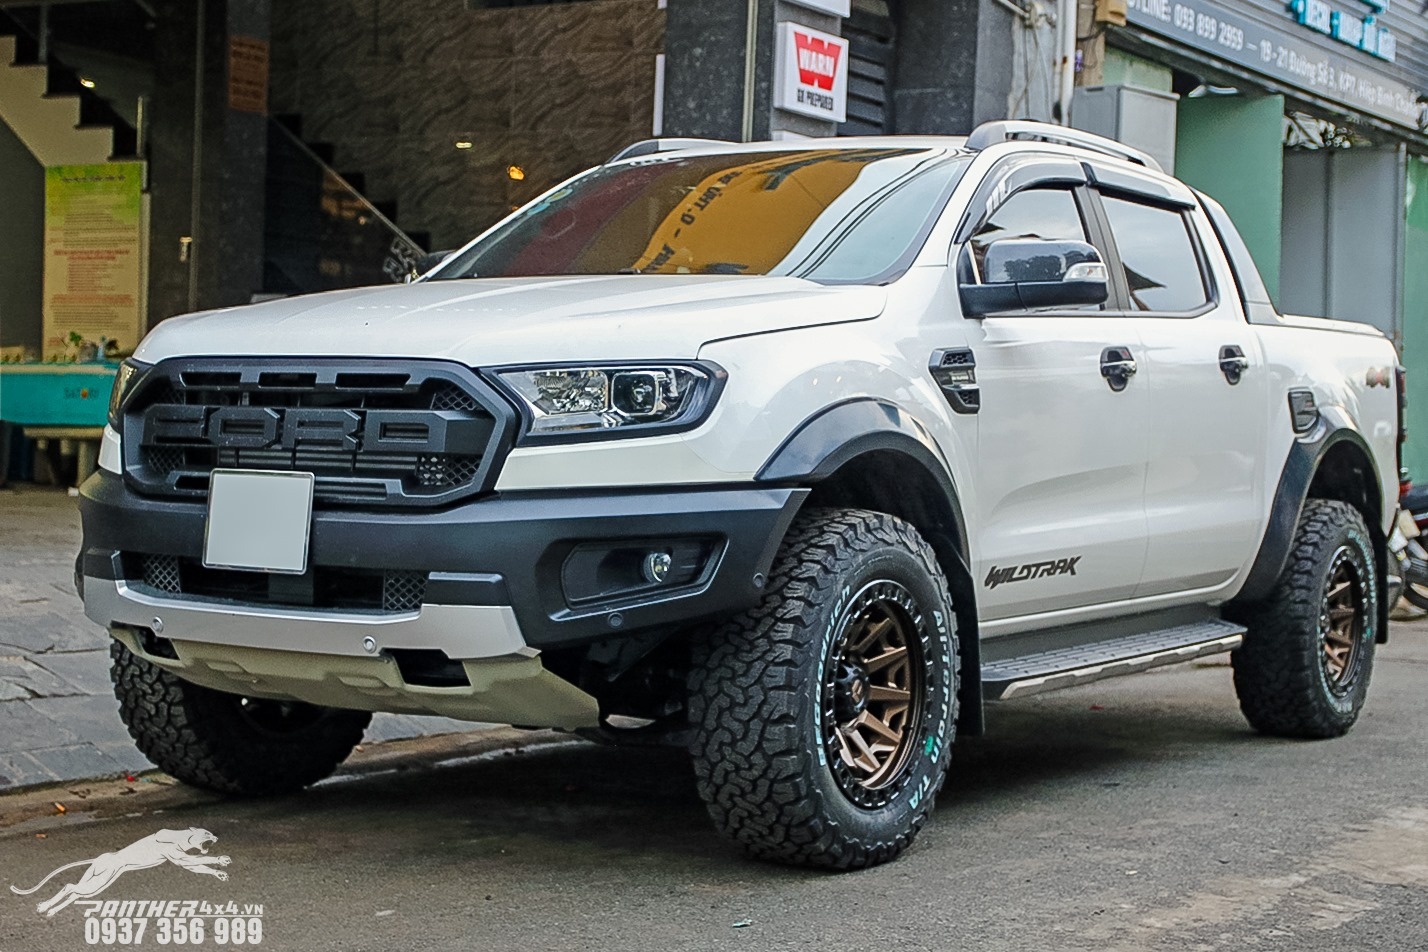 body-kit-raptor-2019-cho-ban-tai-ford-ranger-wildtrak